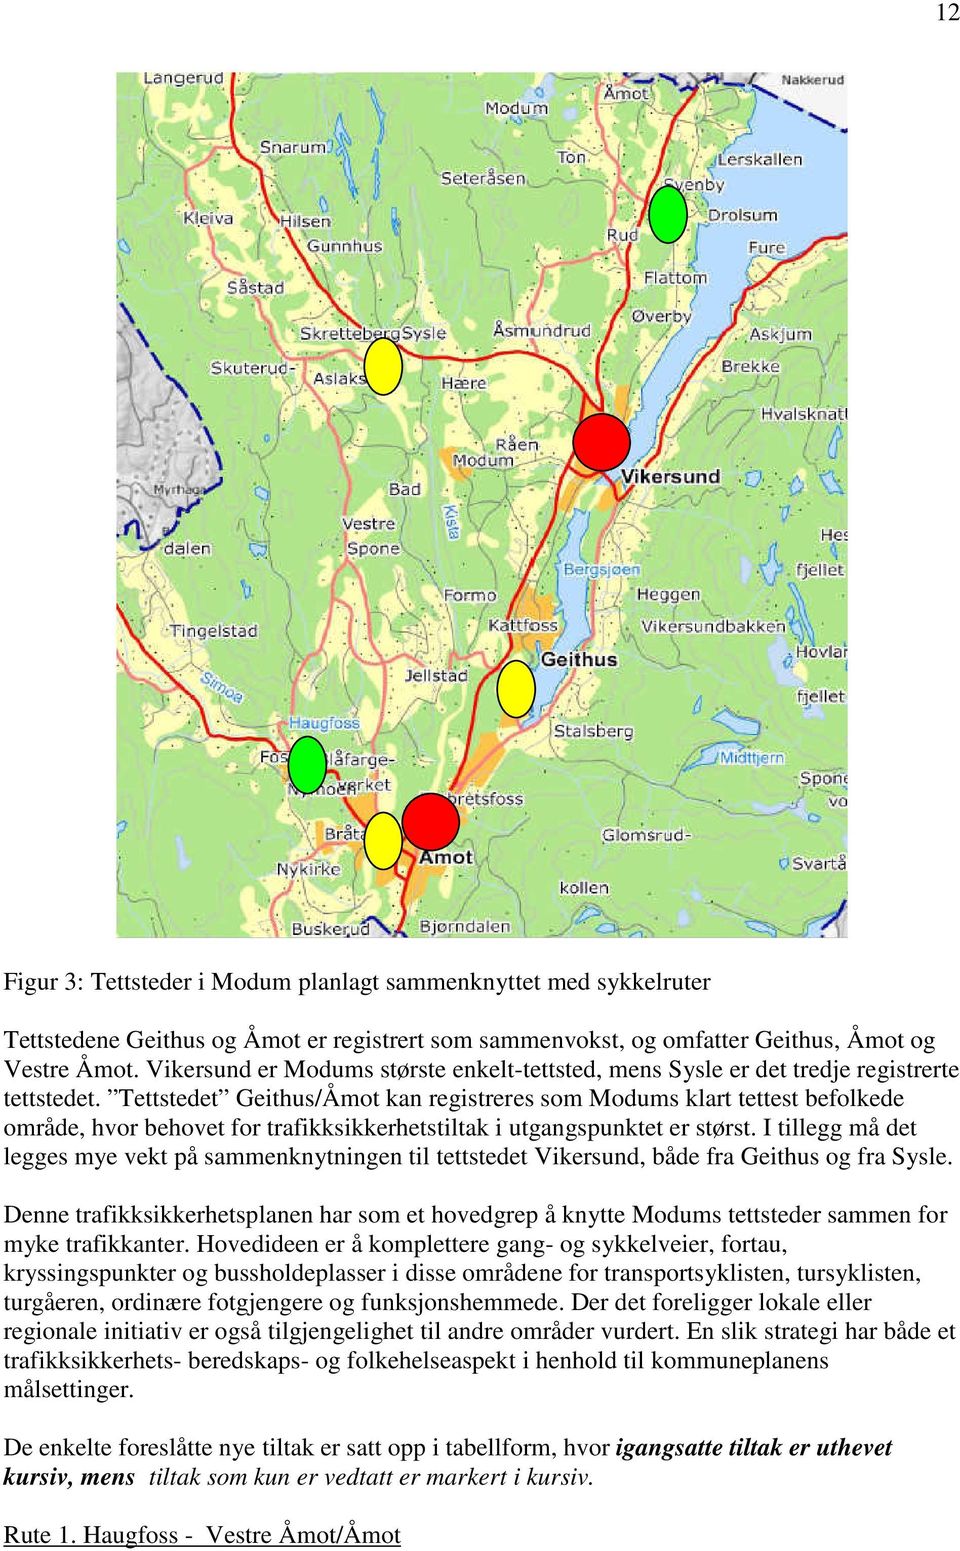 Tettstedet Geithus/Åmot kan registreres som Modums klart tettest befolkede område, hvor behovet for trafikksikkerhetstiltak i utgangspunktet er størst.